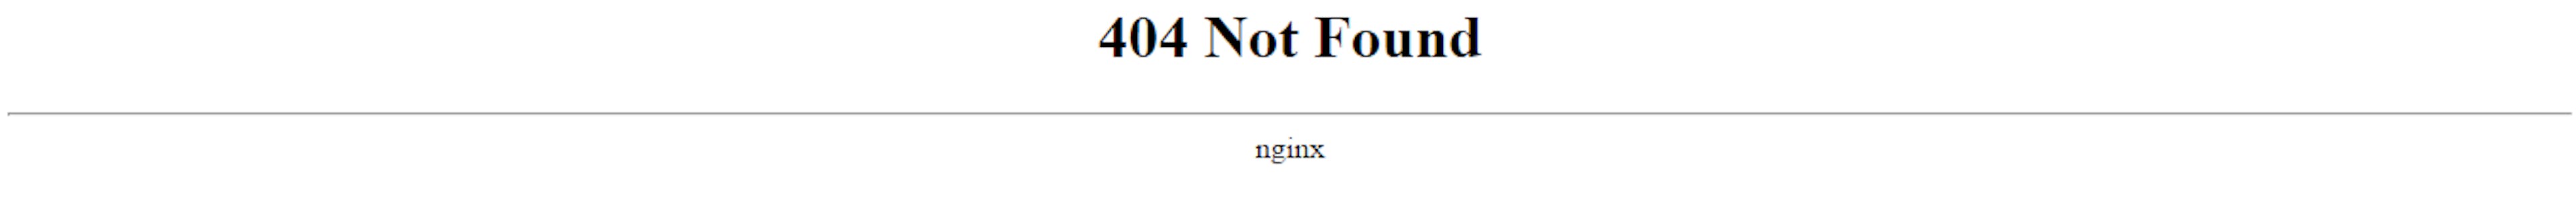 Error 404 was raised by nginx.